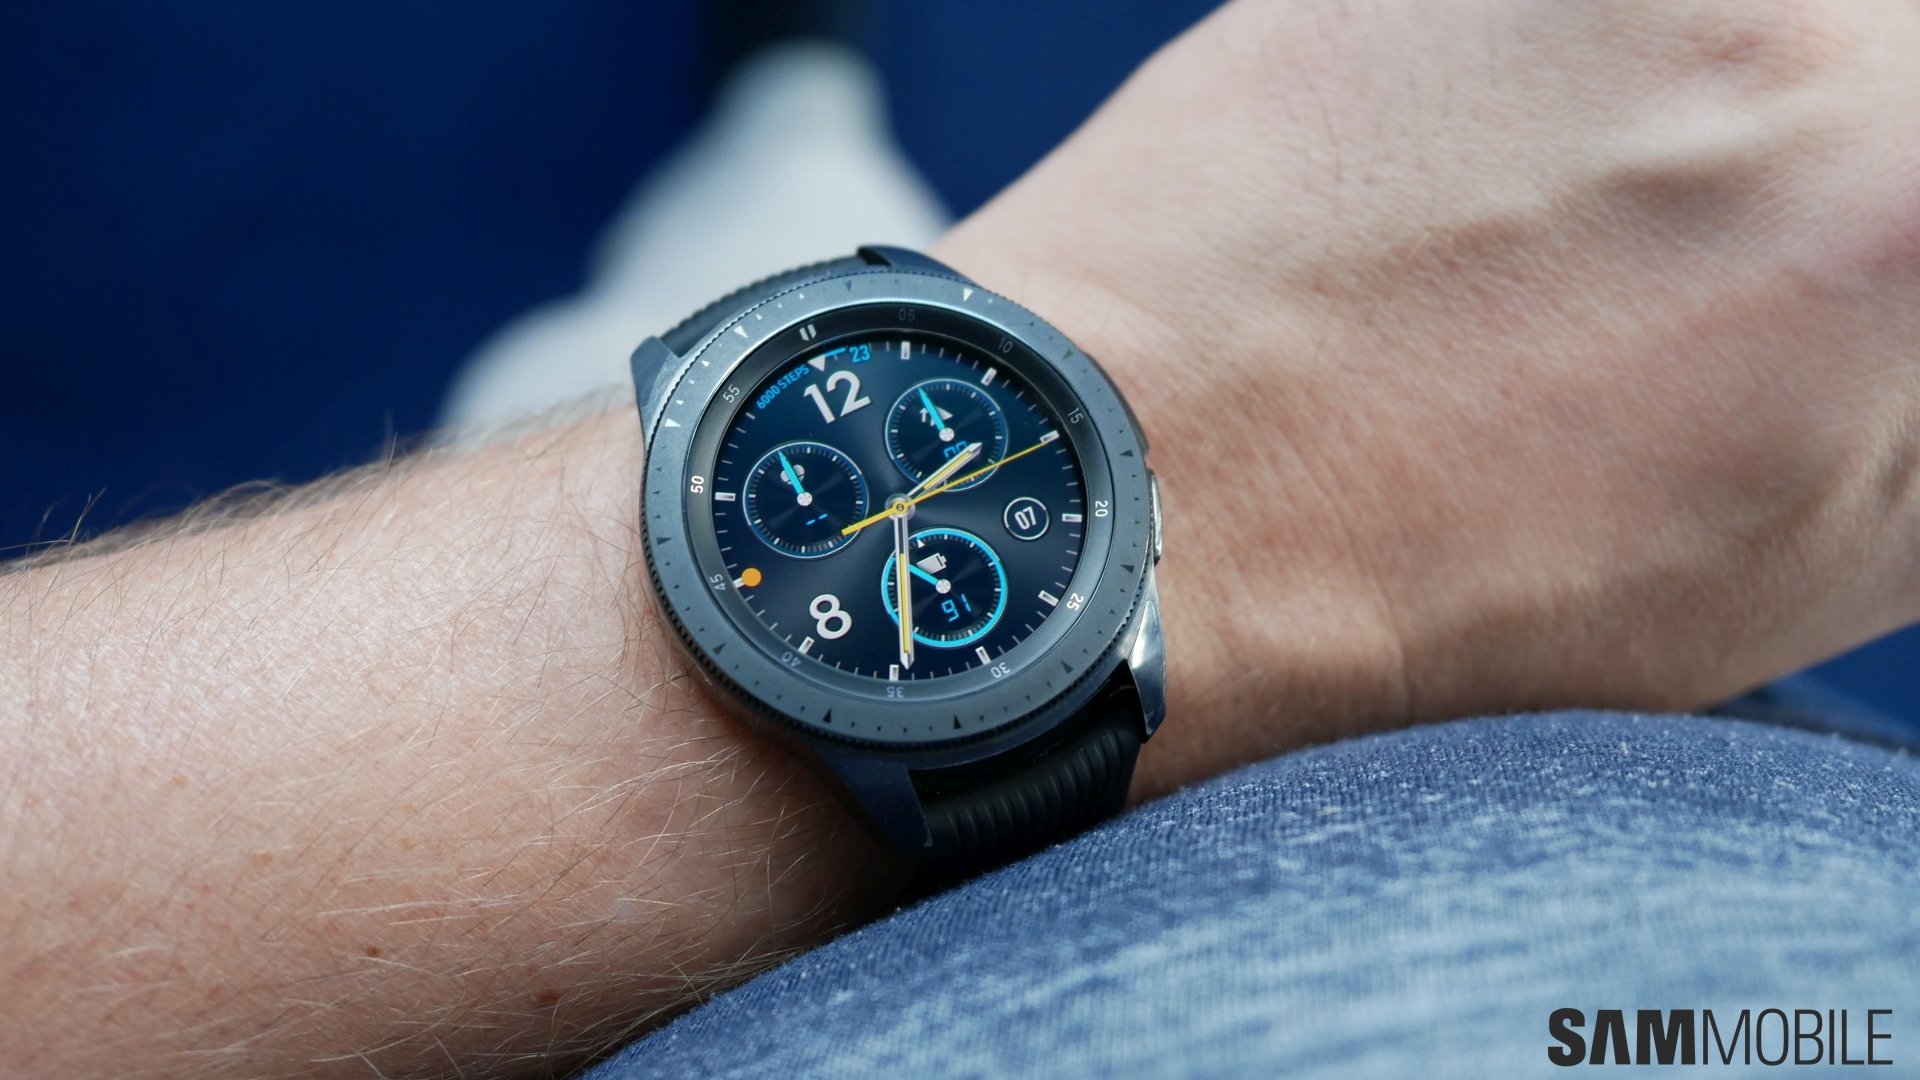 Samsung Galaxy Watch 46mm Sm R800